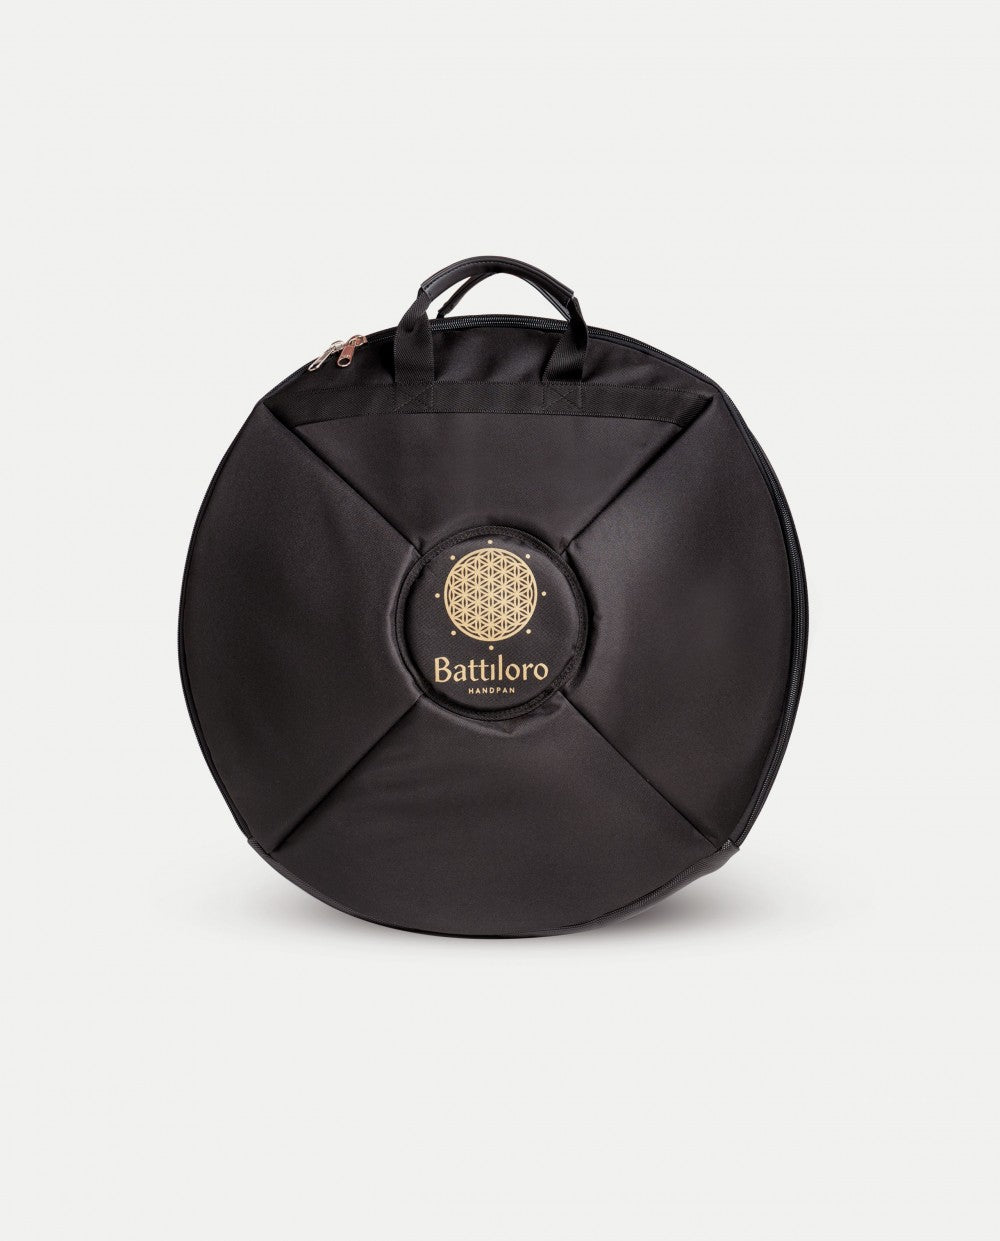 Frontansicht Schwarzes Handpan Softcase Rucksacktasche mit Reißverschluss und Tragegurten